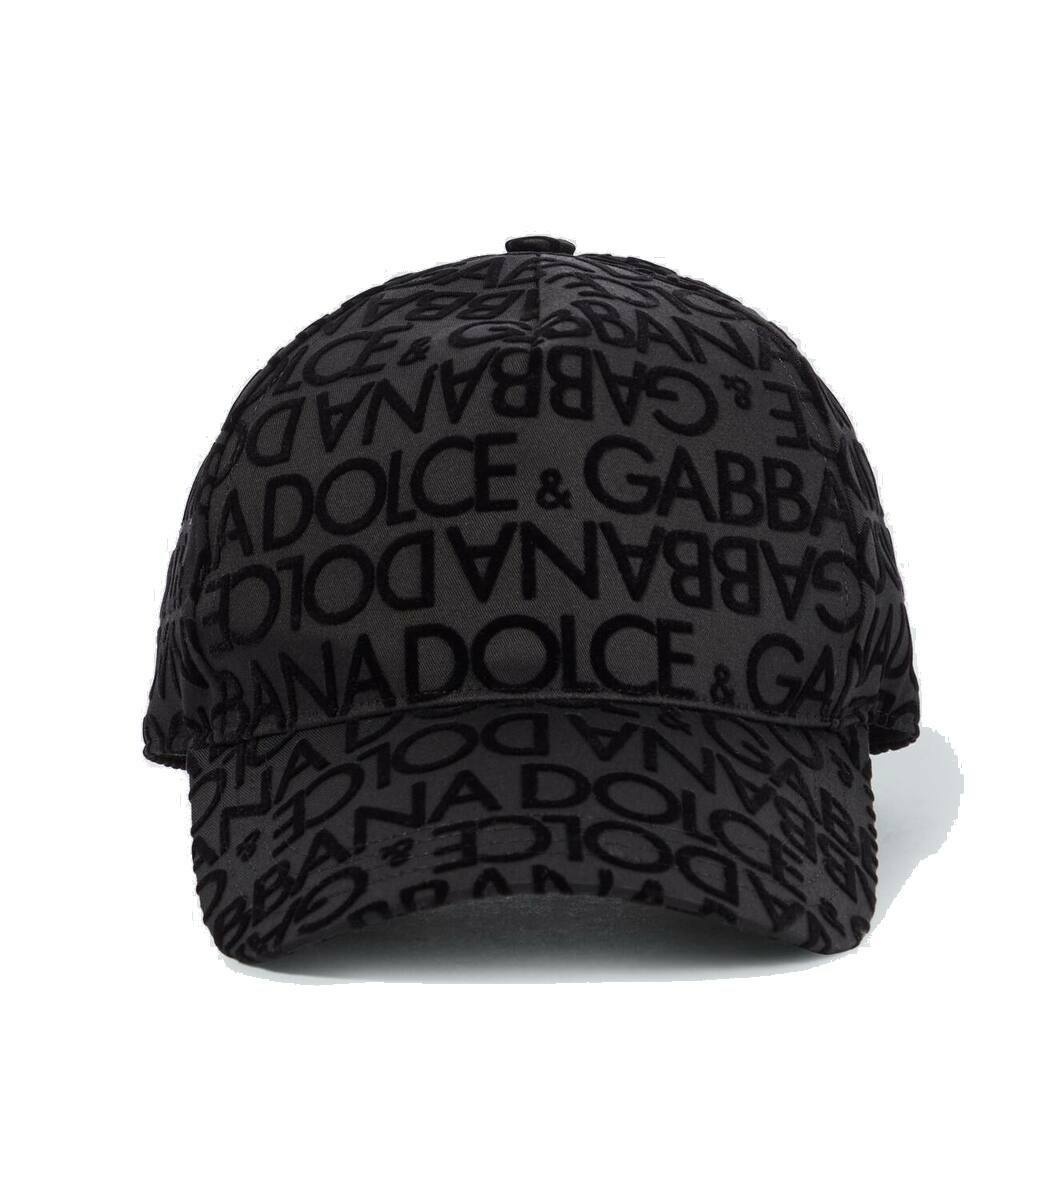 Photo: Dolce&Gabbana Logo cotton baseball cap